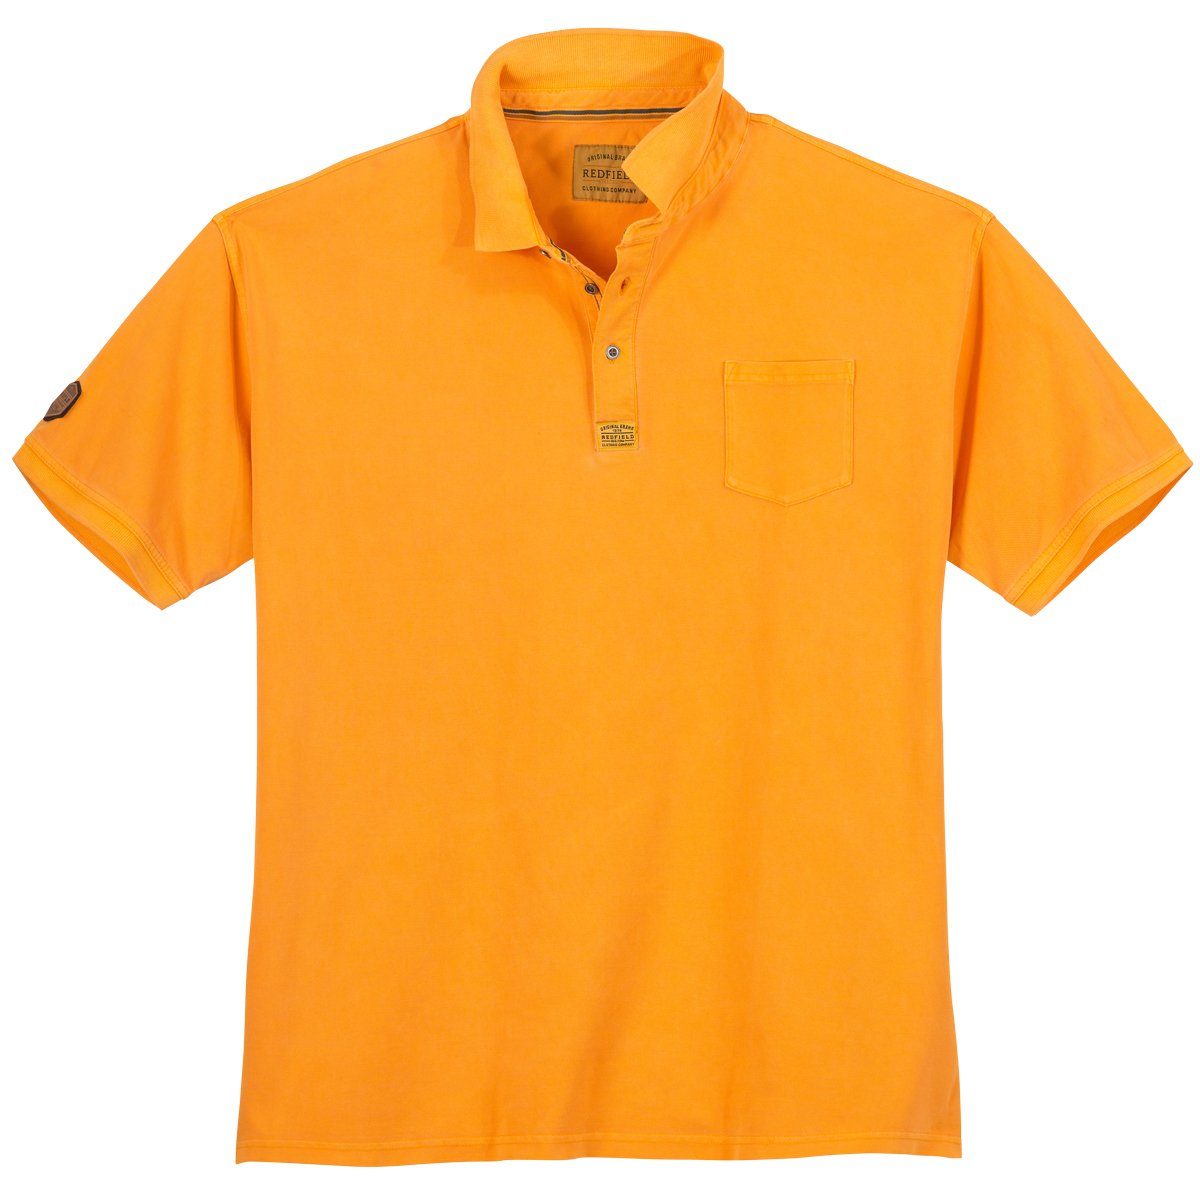 redfield Poloshirt Große Größen Poloshirt orange modisch Redfield